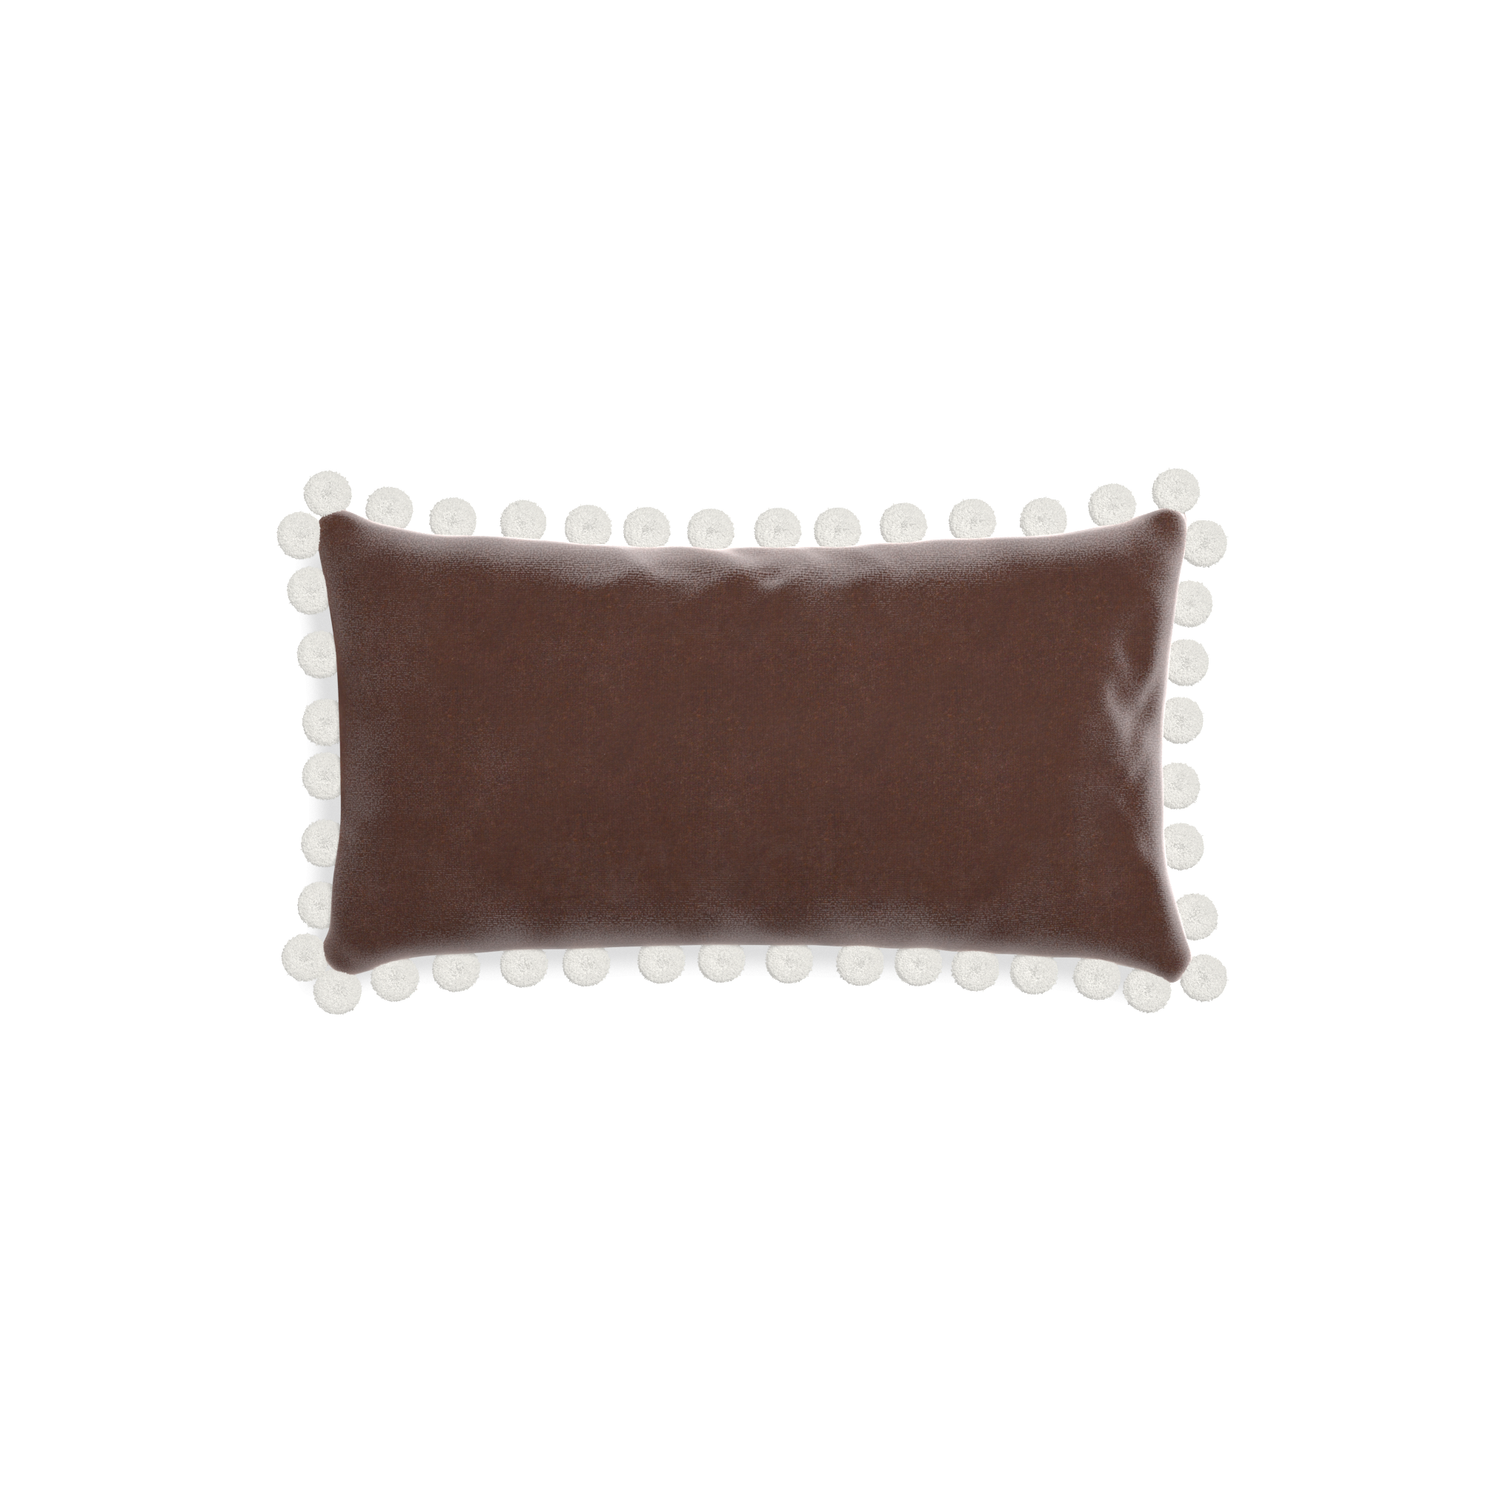 rectangle brown velvet pillow with white pom poms